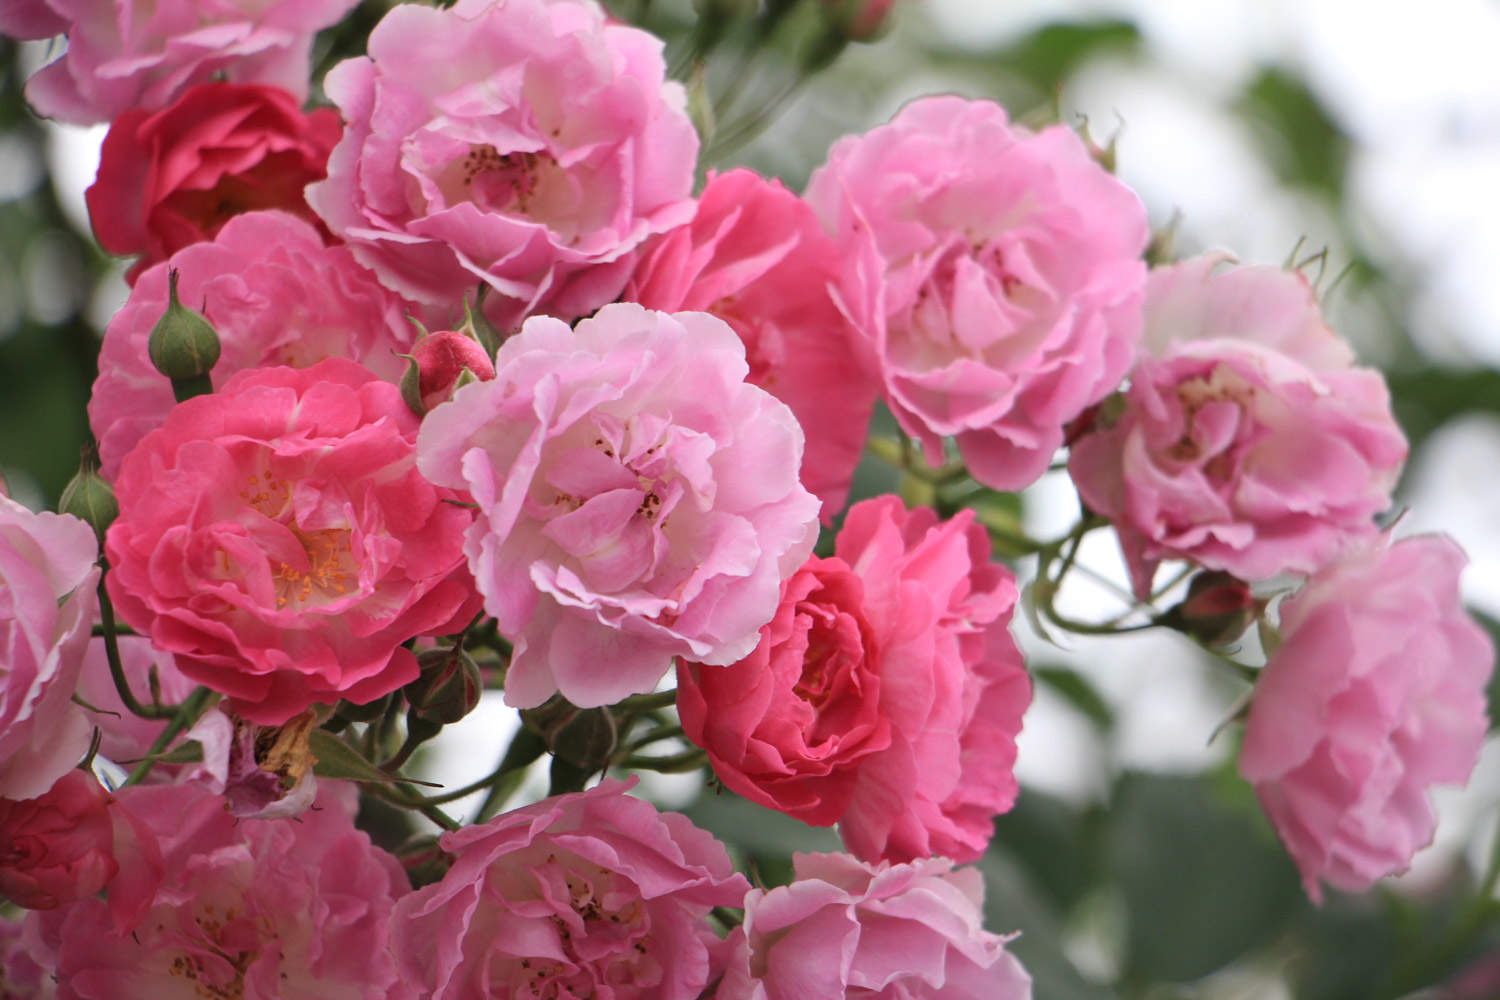 4,粉色蔷薇:粉色的蔷薇花花语寓意为初恋,因为粉色本就是娇嫩的颜色